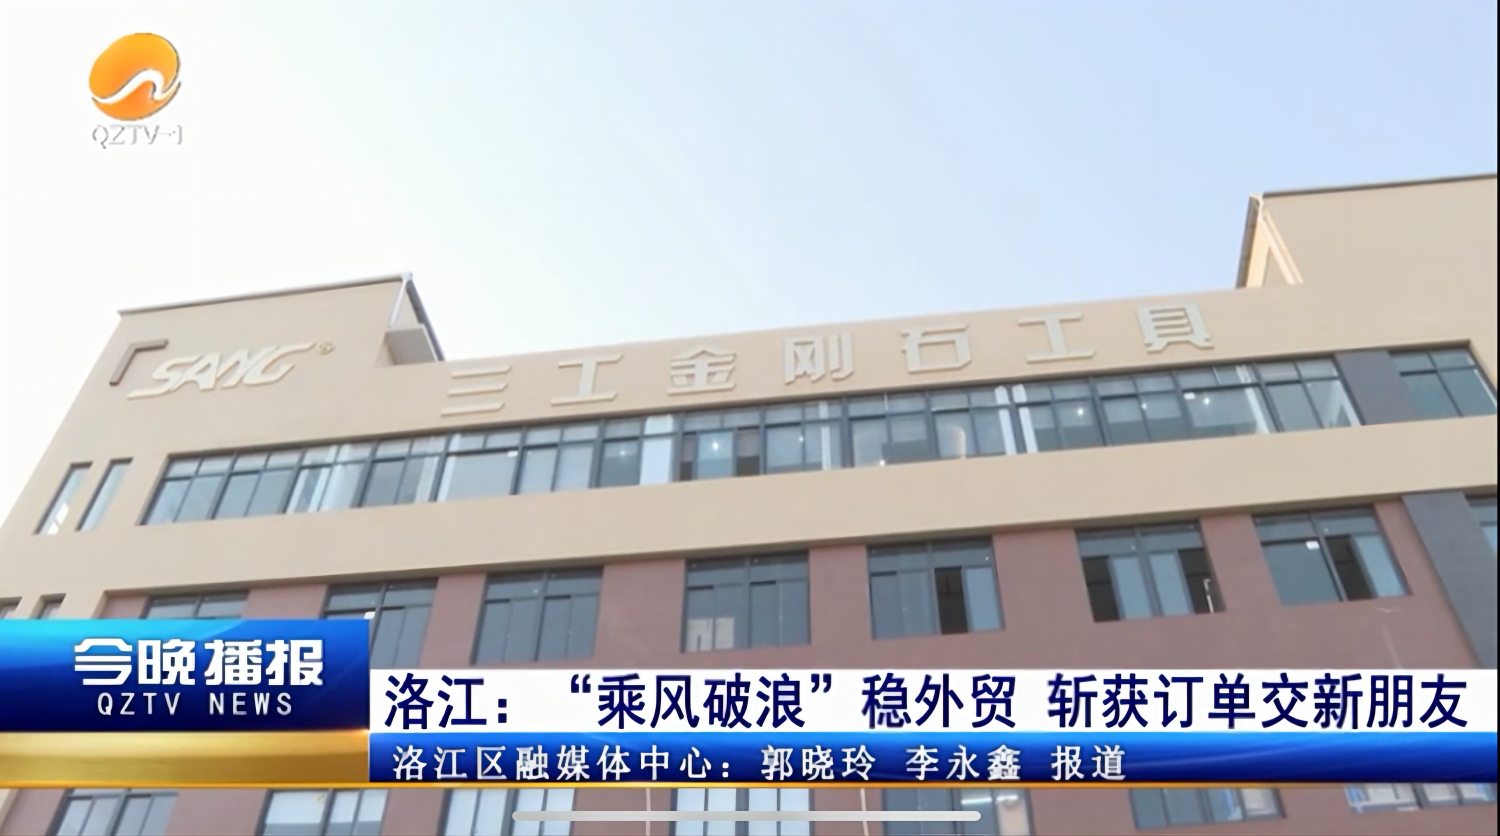 Quanzhou Sang Diamond Tools foi relatado pelo jornal The People's Daily e QZTV